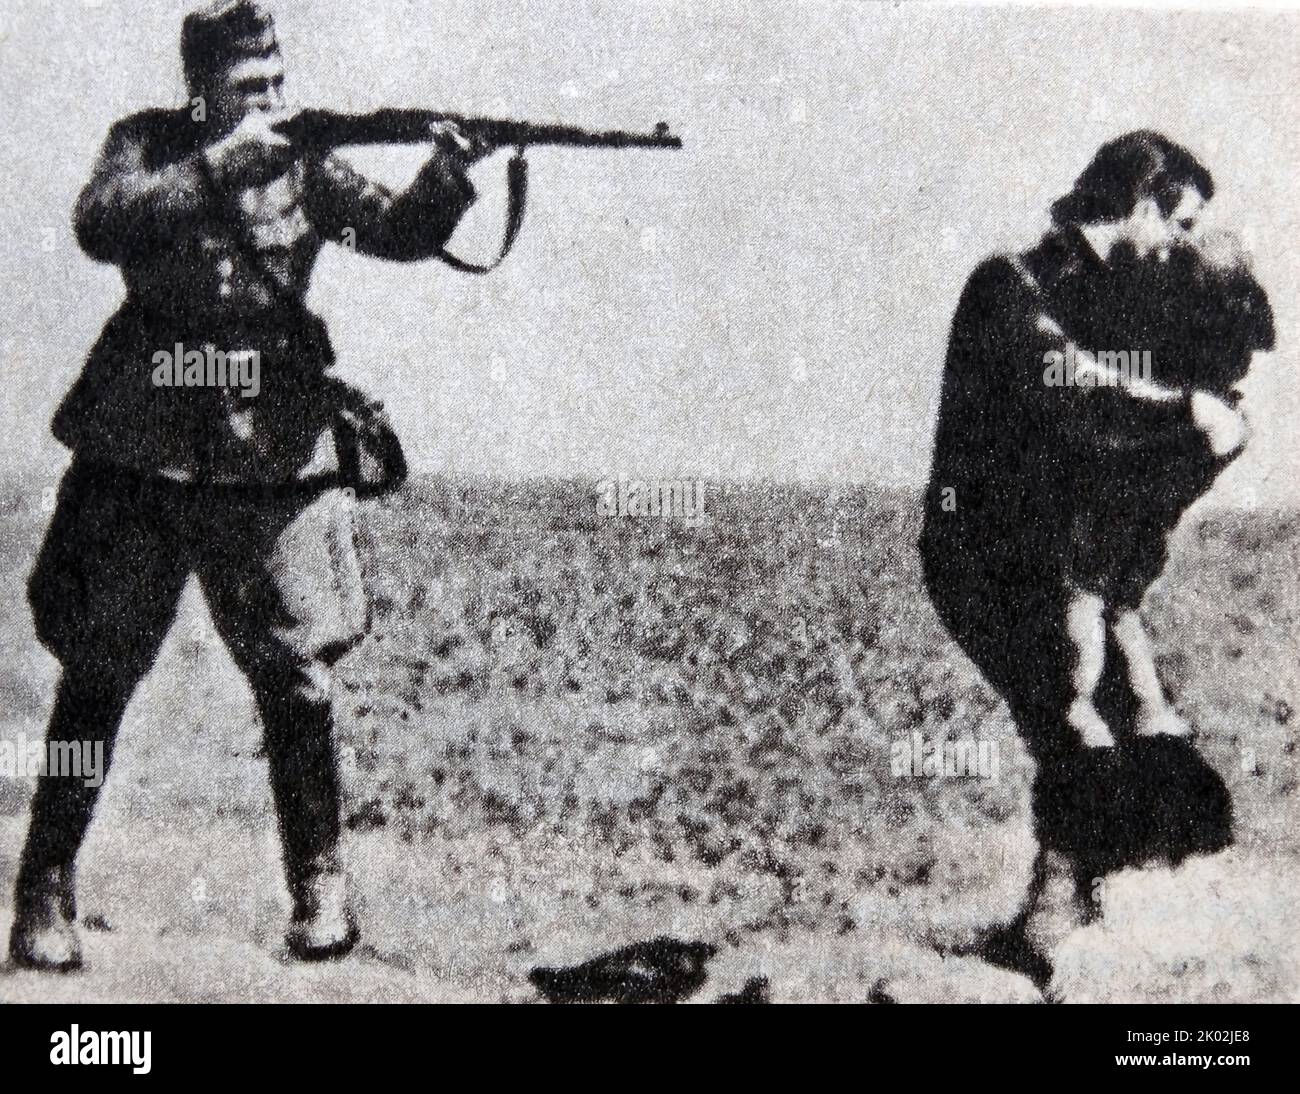 La photographie Ivanhorod Einsatzgruppen est une image de l'Holocauste, montrant un soldat visant une carabine à une femme qui tente de protéger un enfant avec son corps. Elle dépeint le meurtre de Juifs par un escadron de la mort d'Einsatzgruppen près d'Ivanhorod, en Ukraine, en 1942. Banque D'Images